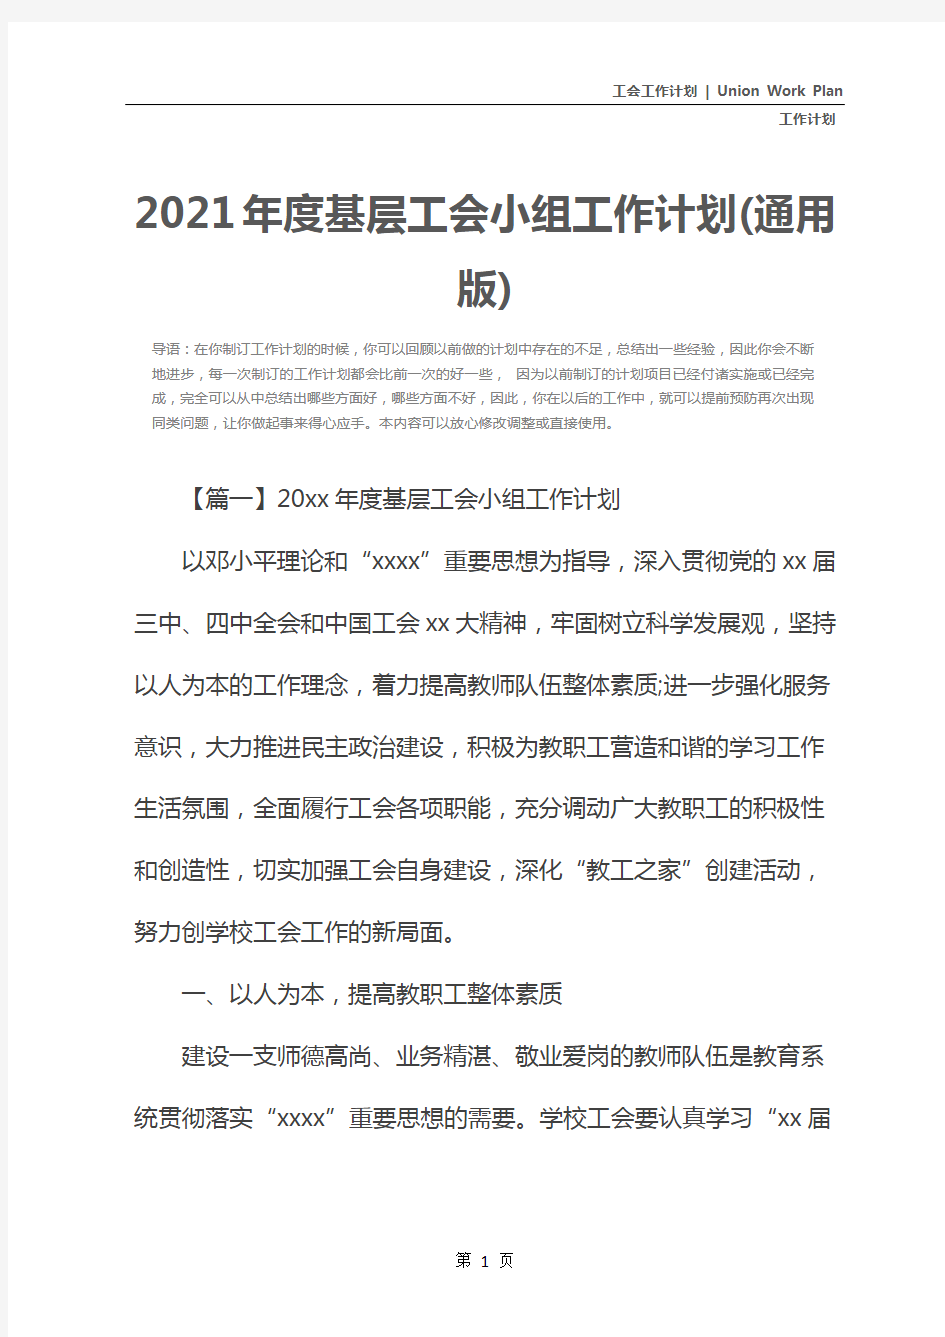 2021年度基层工会小组工作计划(通用版)